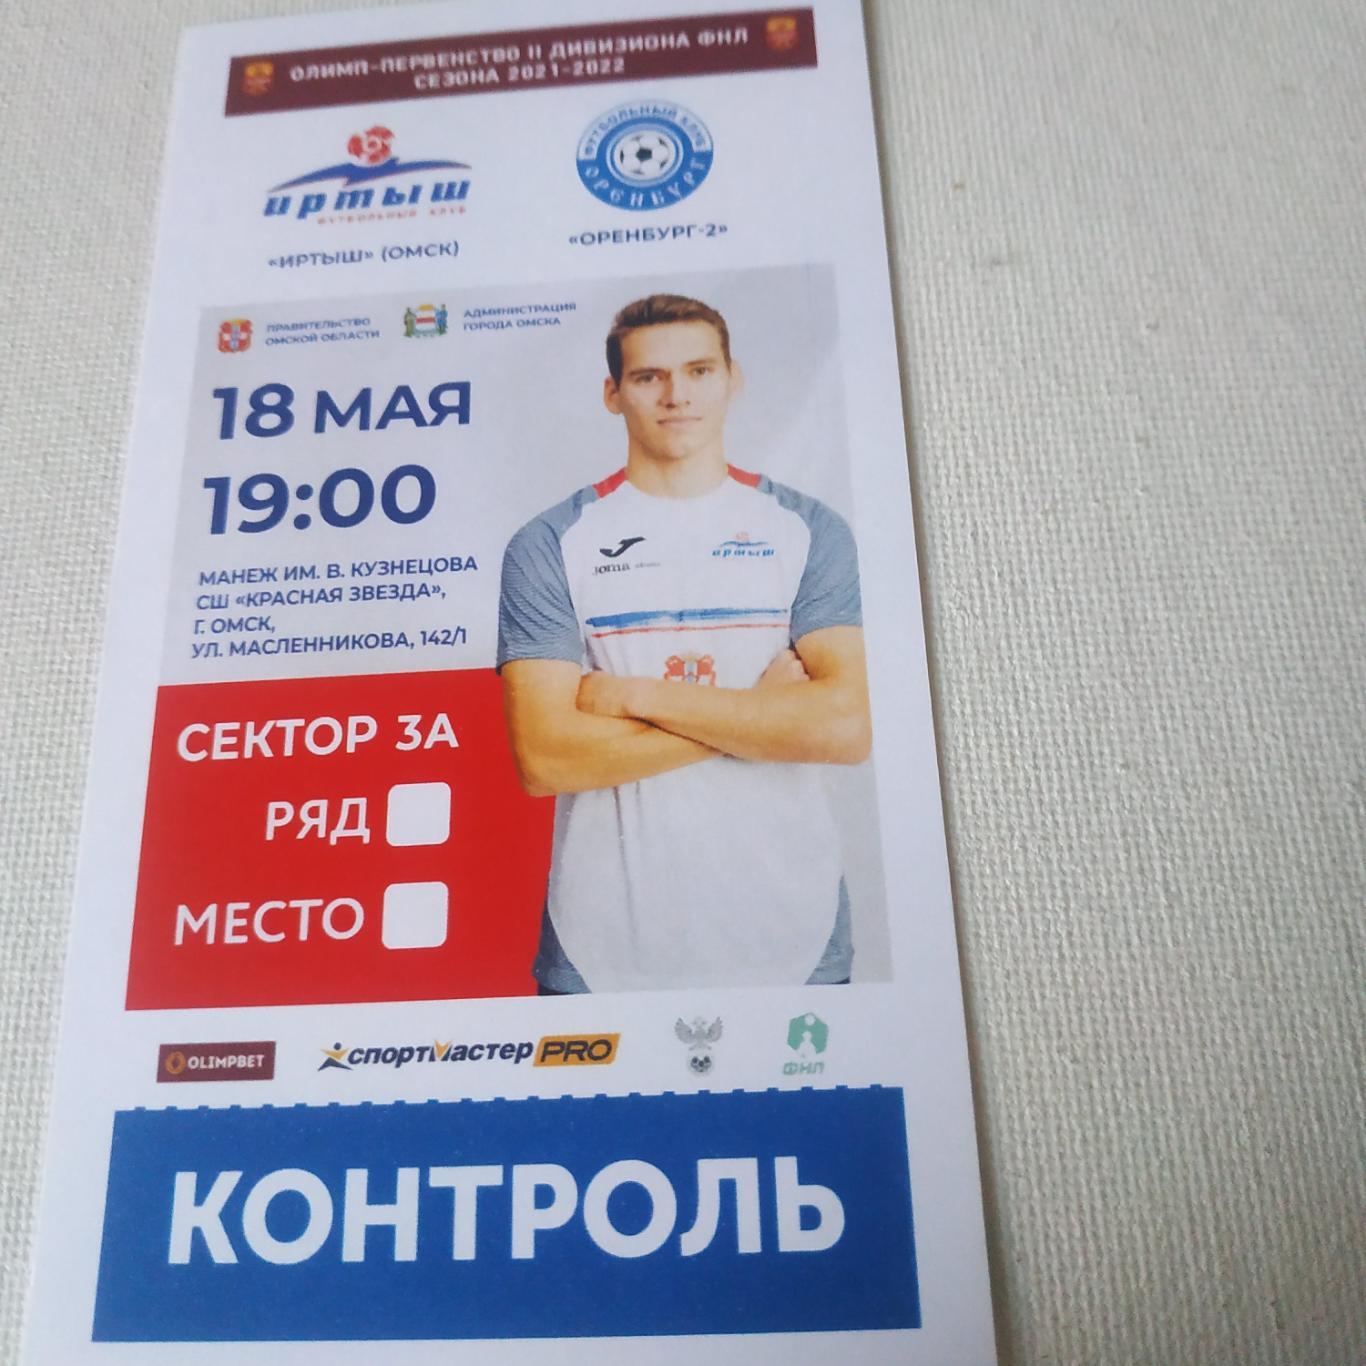 Иртыш ( Омск) - ФК Оренбург -2 (18.05.2022)